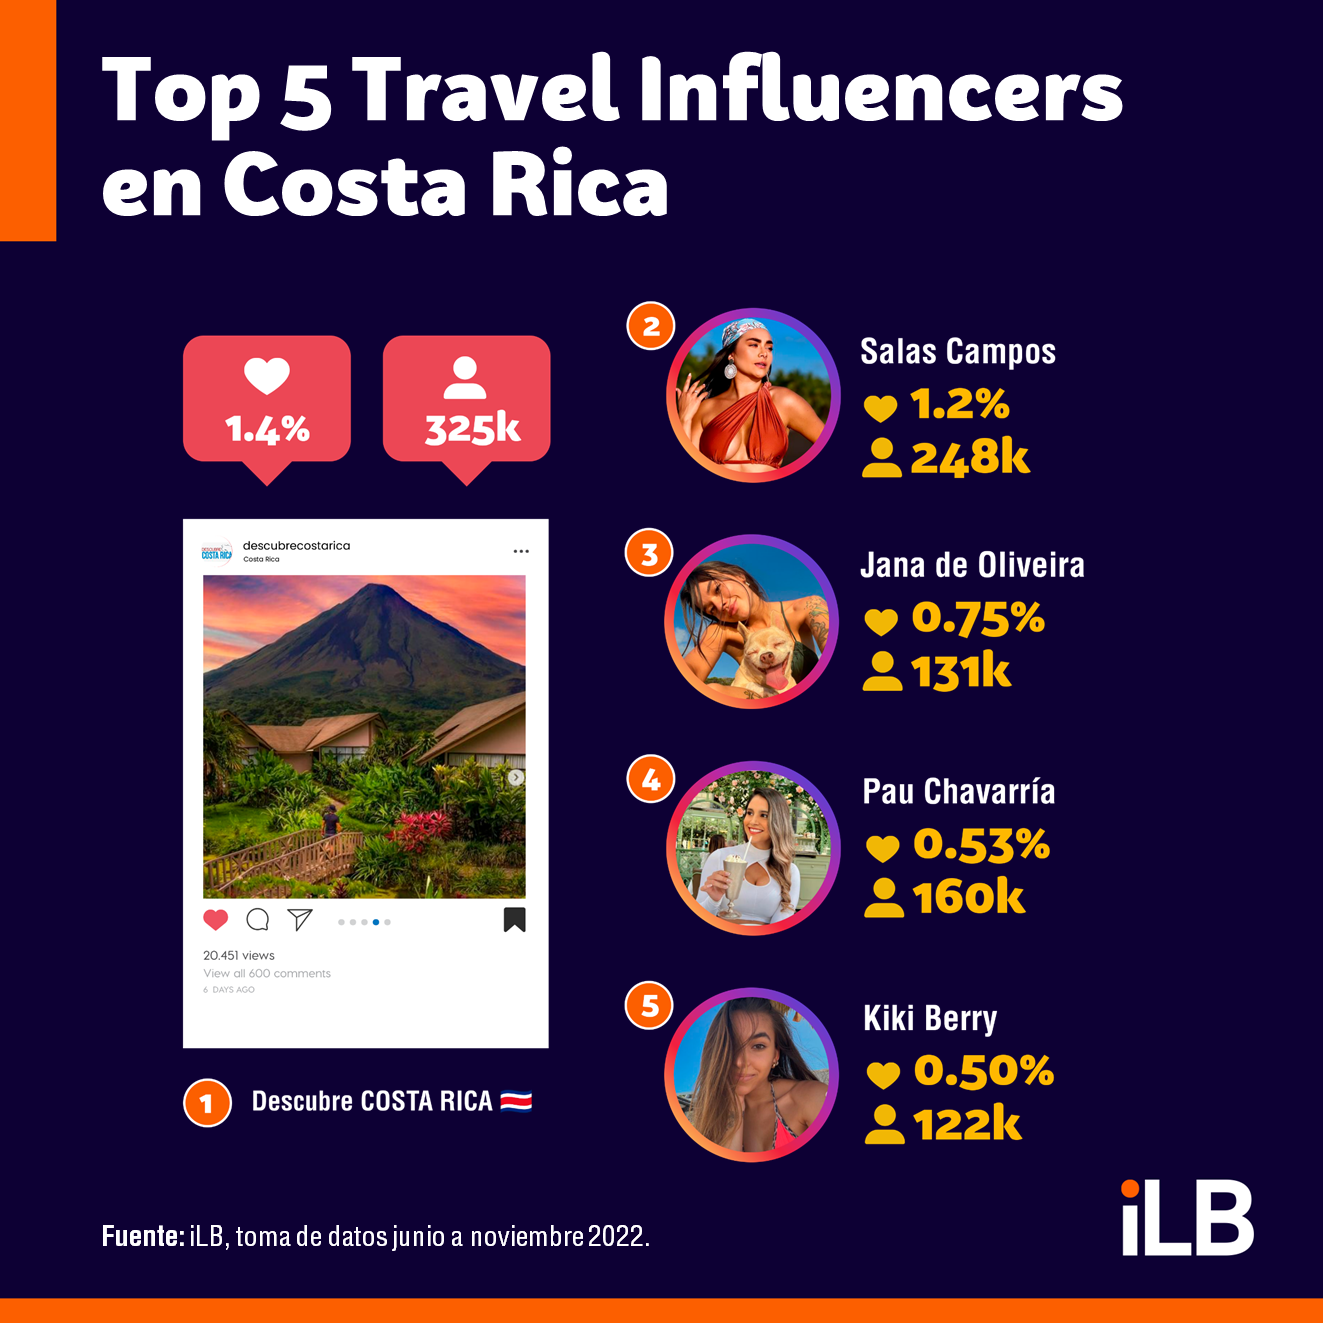 Top 5 travel influencers en Costa Rica